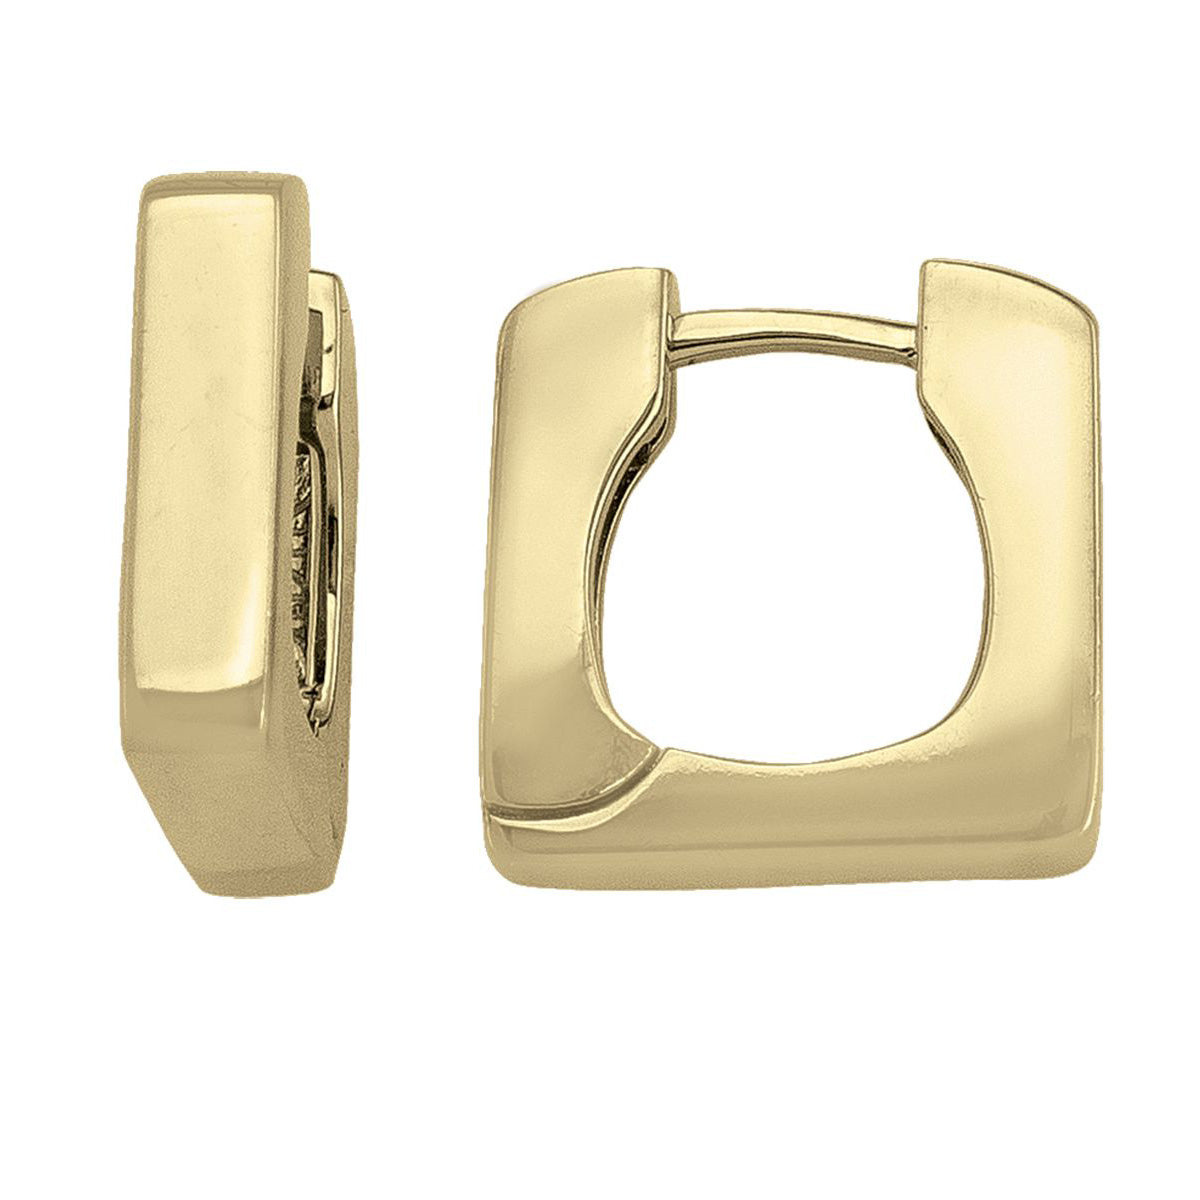 EHG0110, Gold Earrings, Huggies, 3.5 mm Tubing